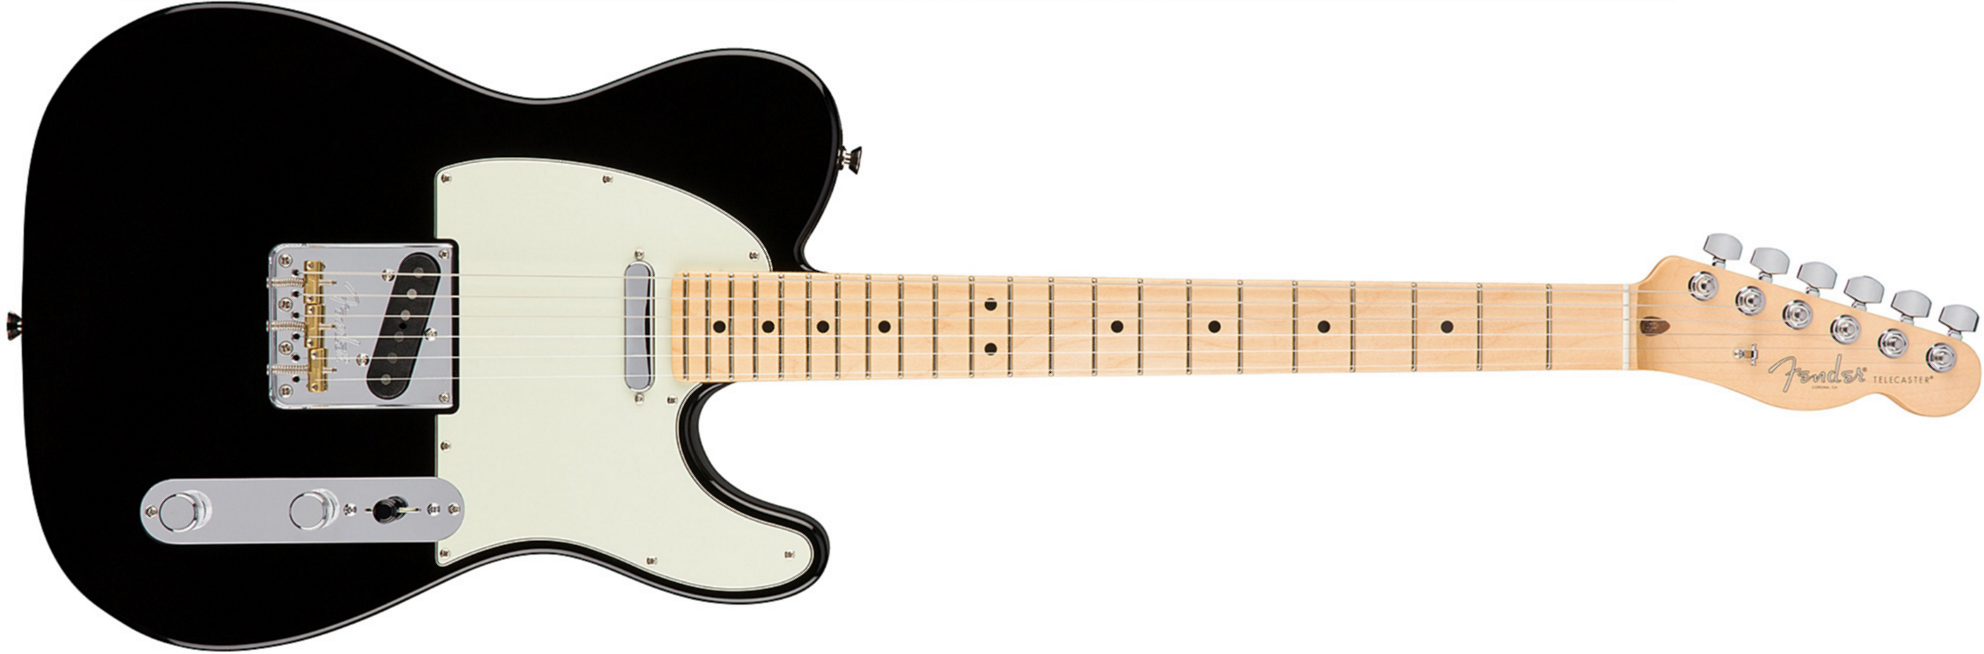 Fender Tele American Professional 2s Usa Mn - Black - E-Gitarre in Teleform - Main picture